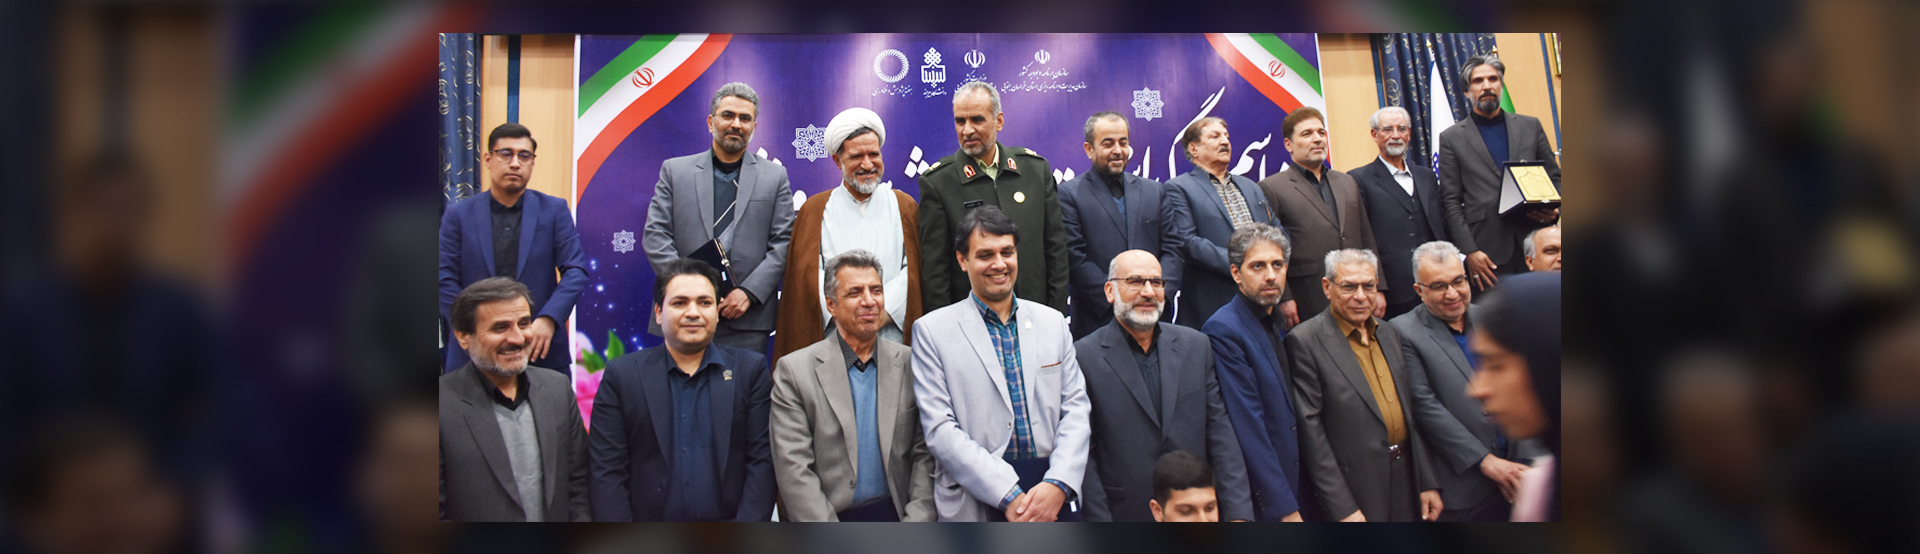 انتخاب رئیس پارک علم و فناوری خراسان جنوبی به عنوان مدیر برگزیده فعال در پژوهش و فناوری استان